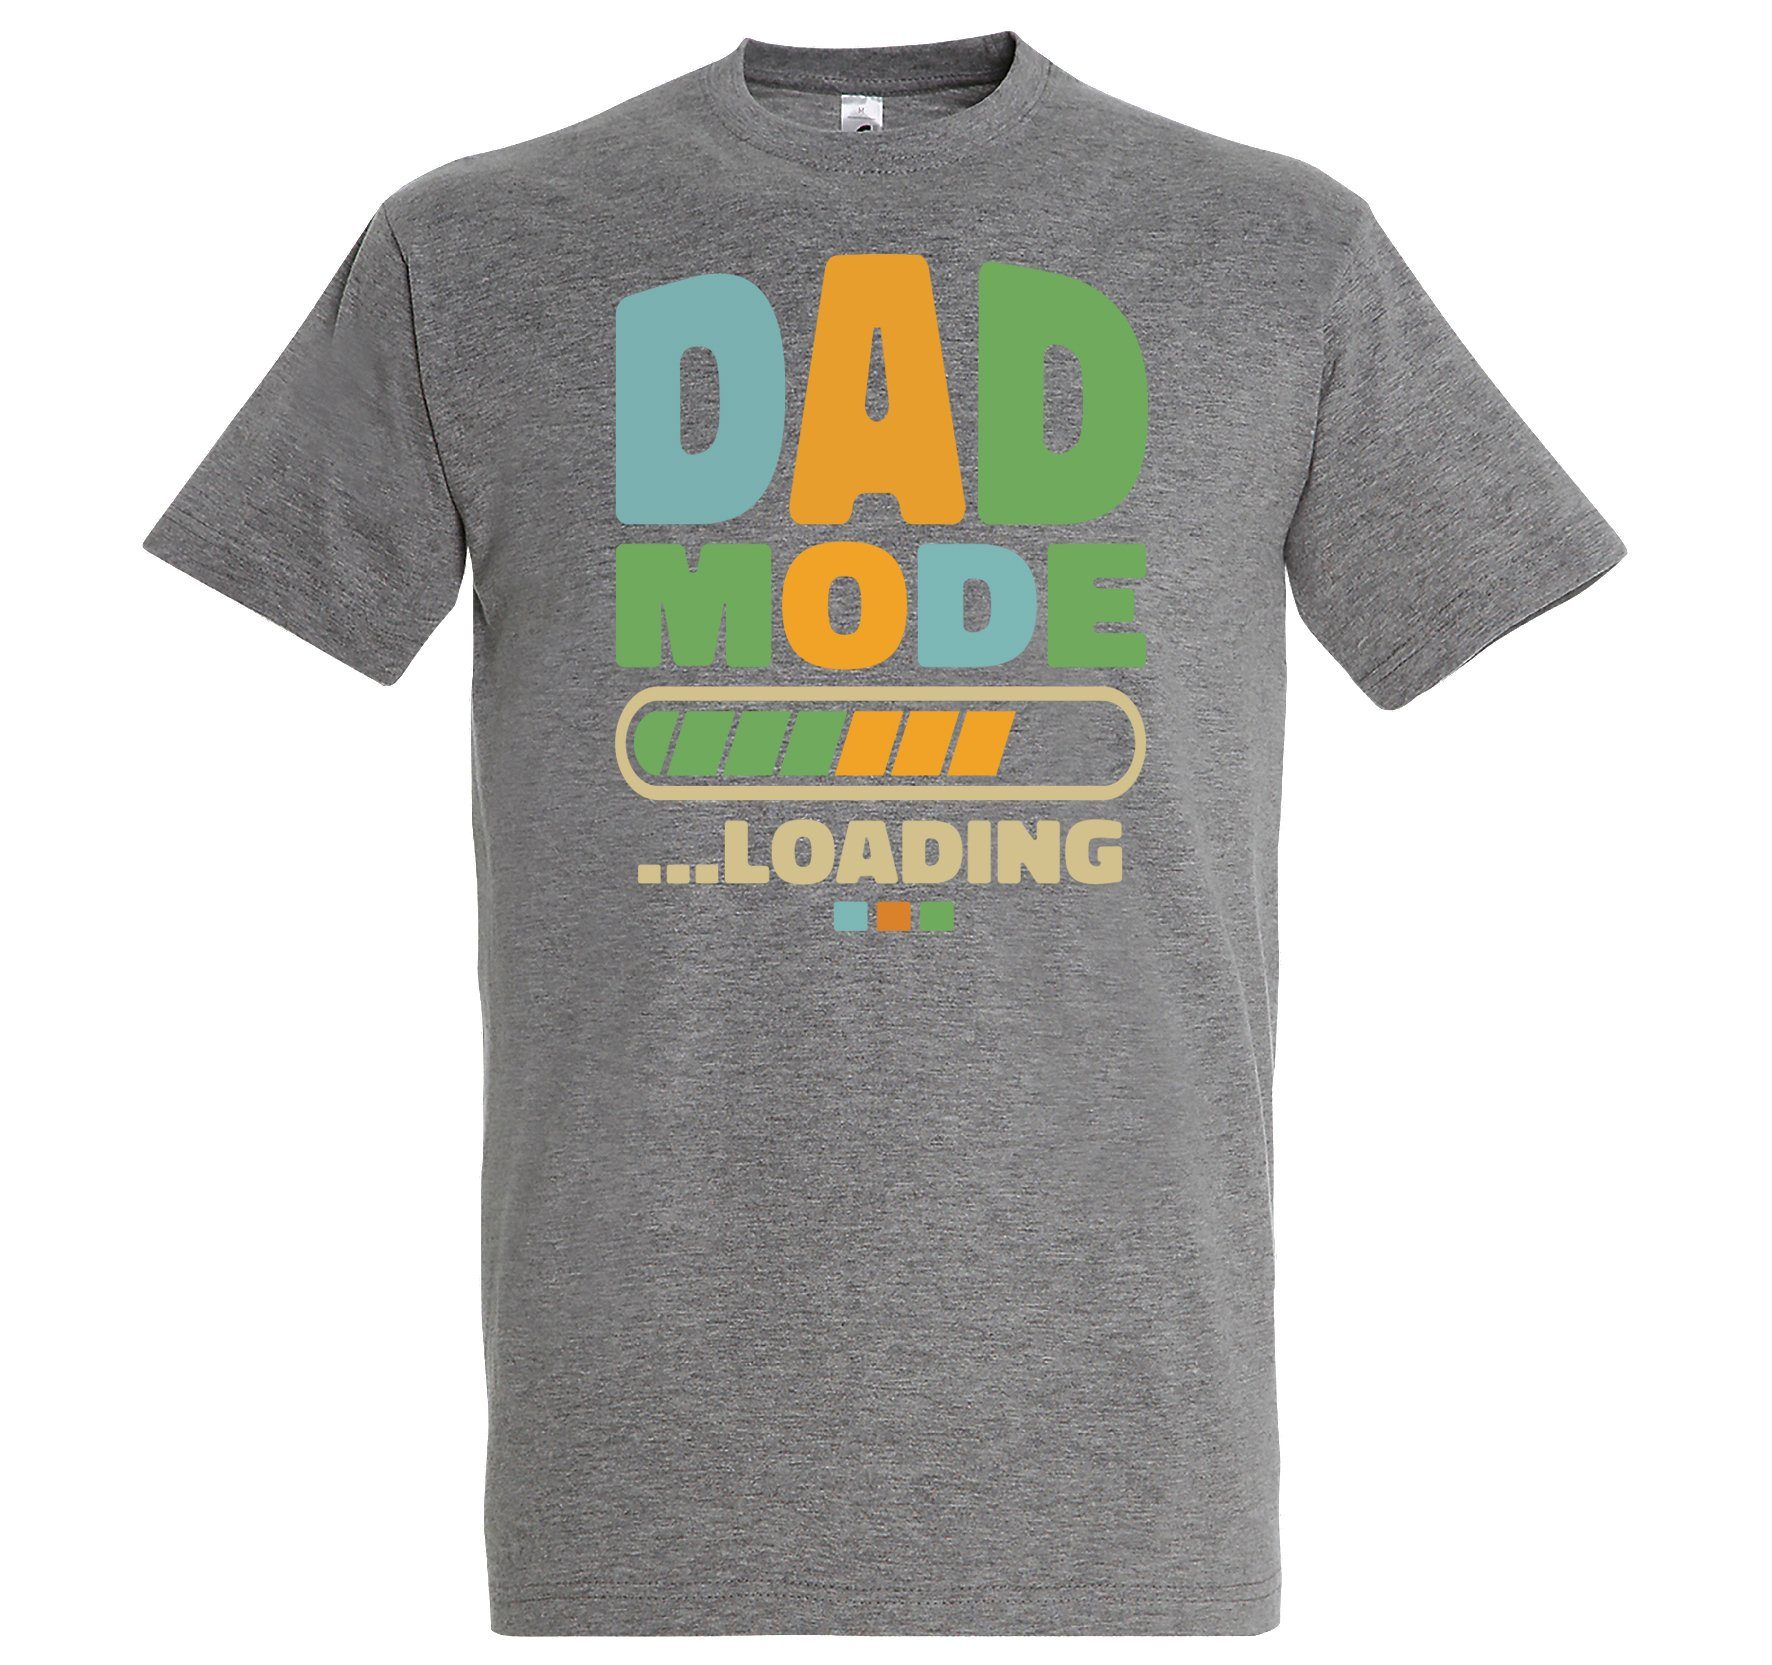 DAD im Shirt Grau T-Shirt Youth Mode Designz Loading Herren Fun-Look